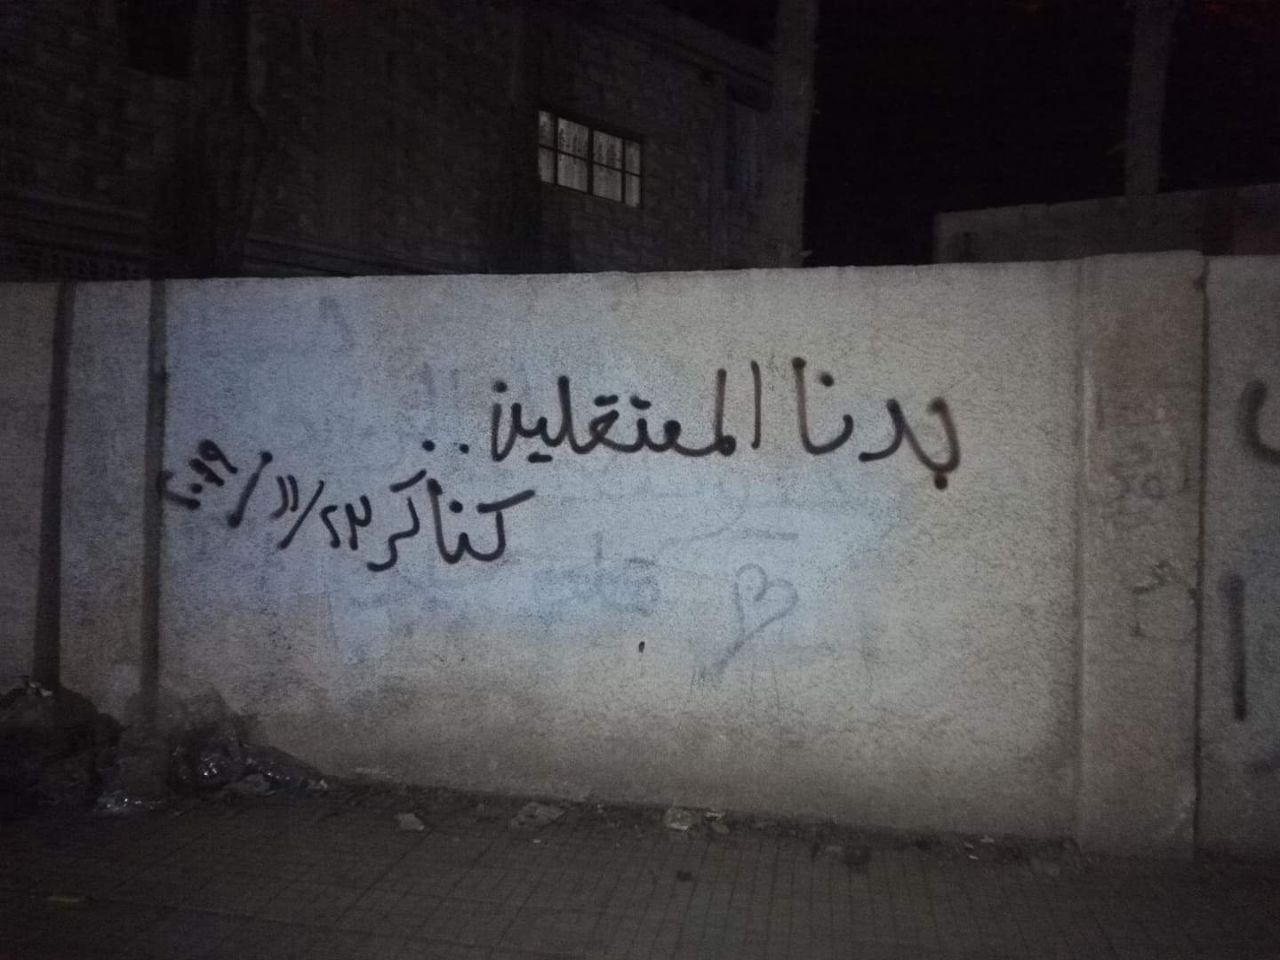 جدارية خطّها مجهولون في بلدة كناكر " بدنا المعتقلين ياخونه ياغدارين "